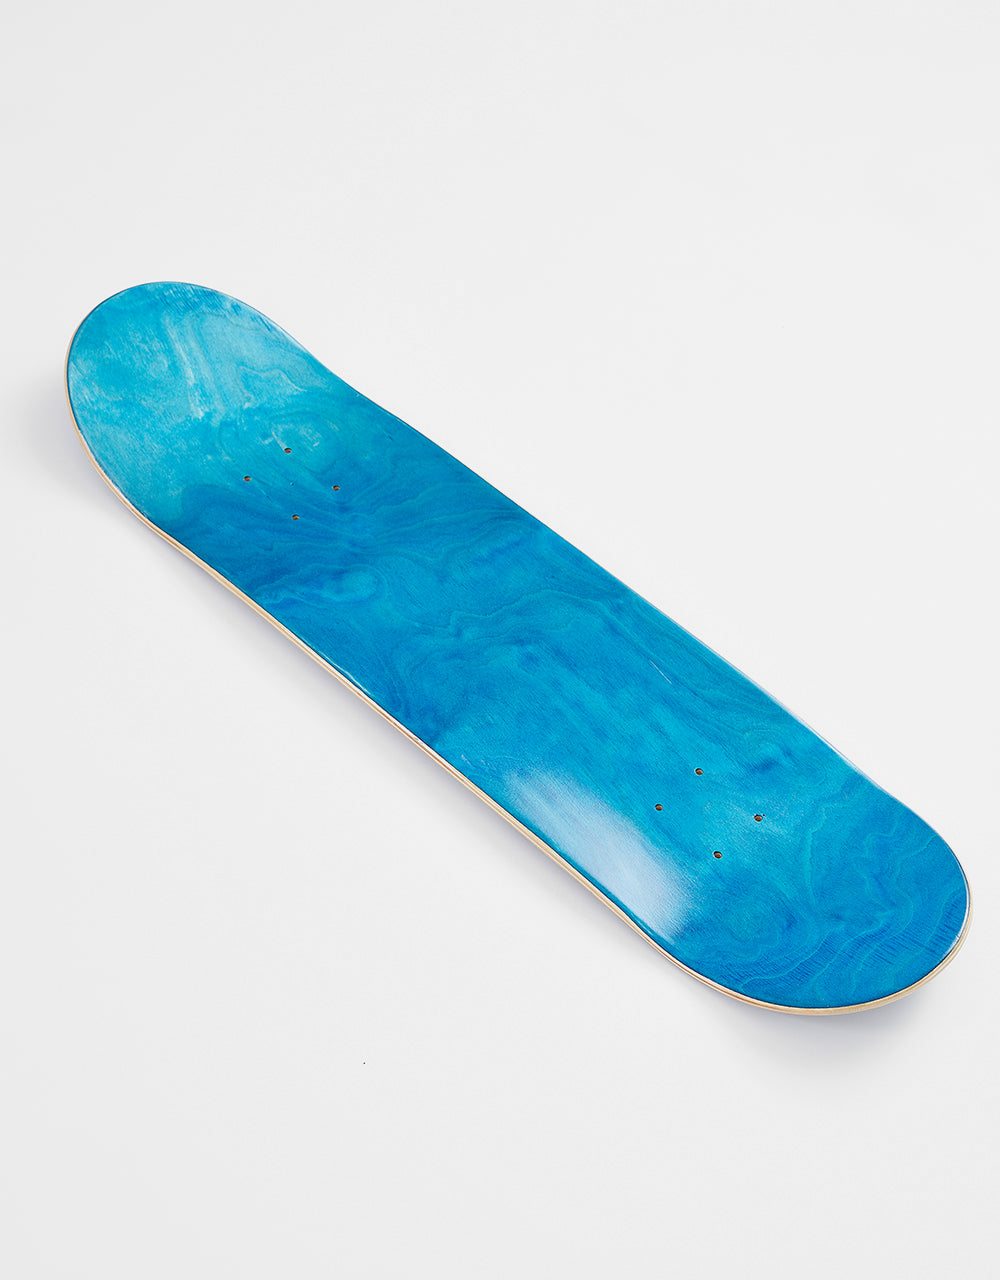 Blueprint Home Heart Navy/Silver Skateboard Deck - 8"